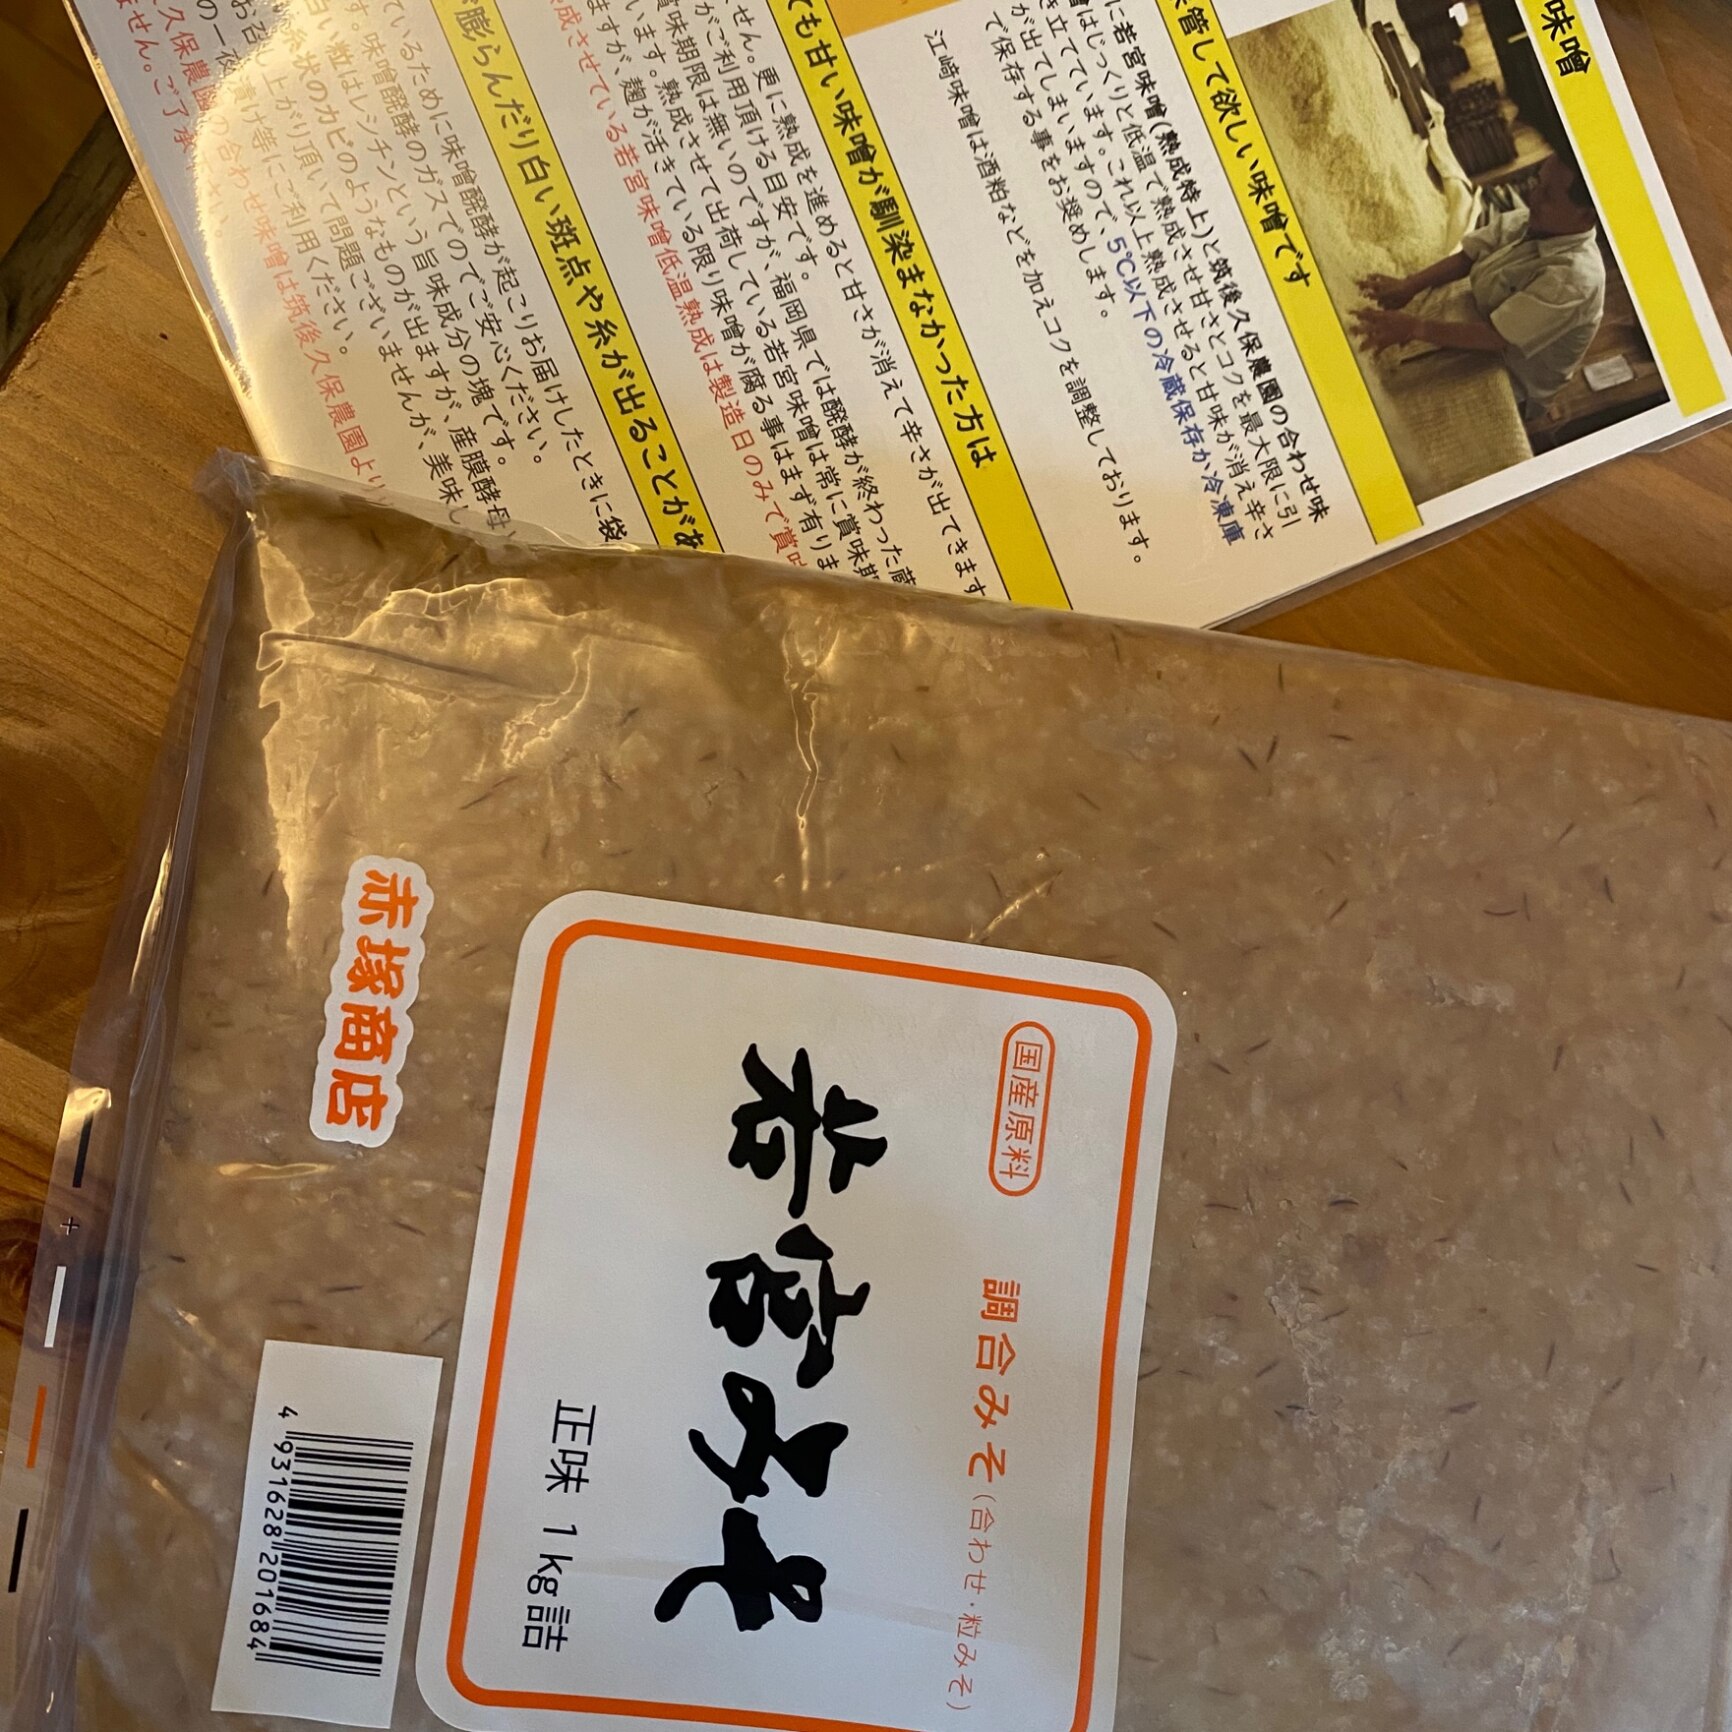 若宮みそ 900g| ポスト投函専用麹味噌 甘口みそ九州の甘い味噌選べる米